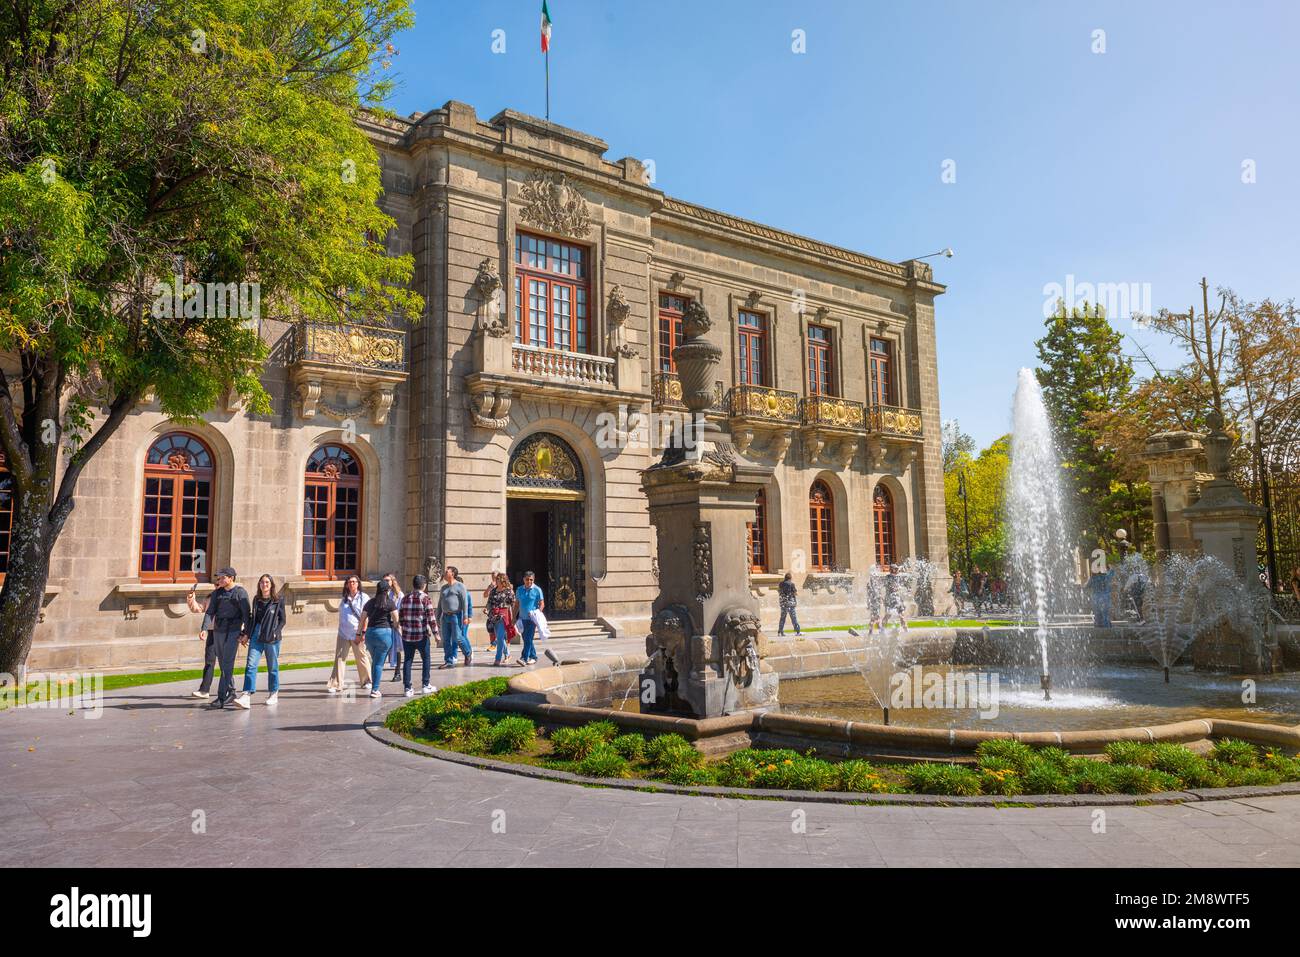 Départ du Musée National de Chapultepec dans le château avec un groupe de touristes quittant le jardin avec des sculptures et des fontaines d'eau Banque D'Images